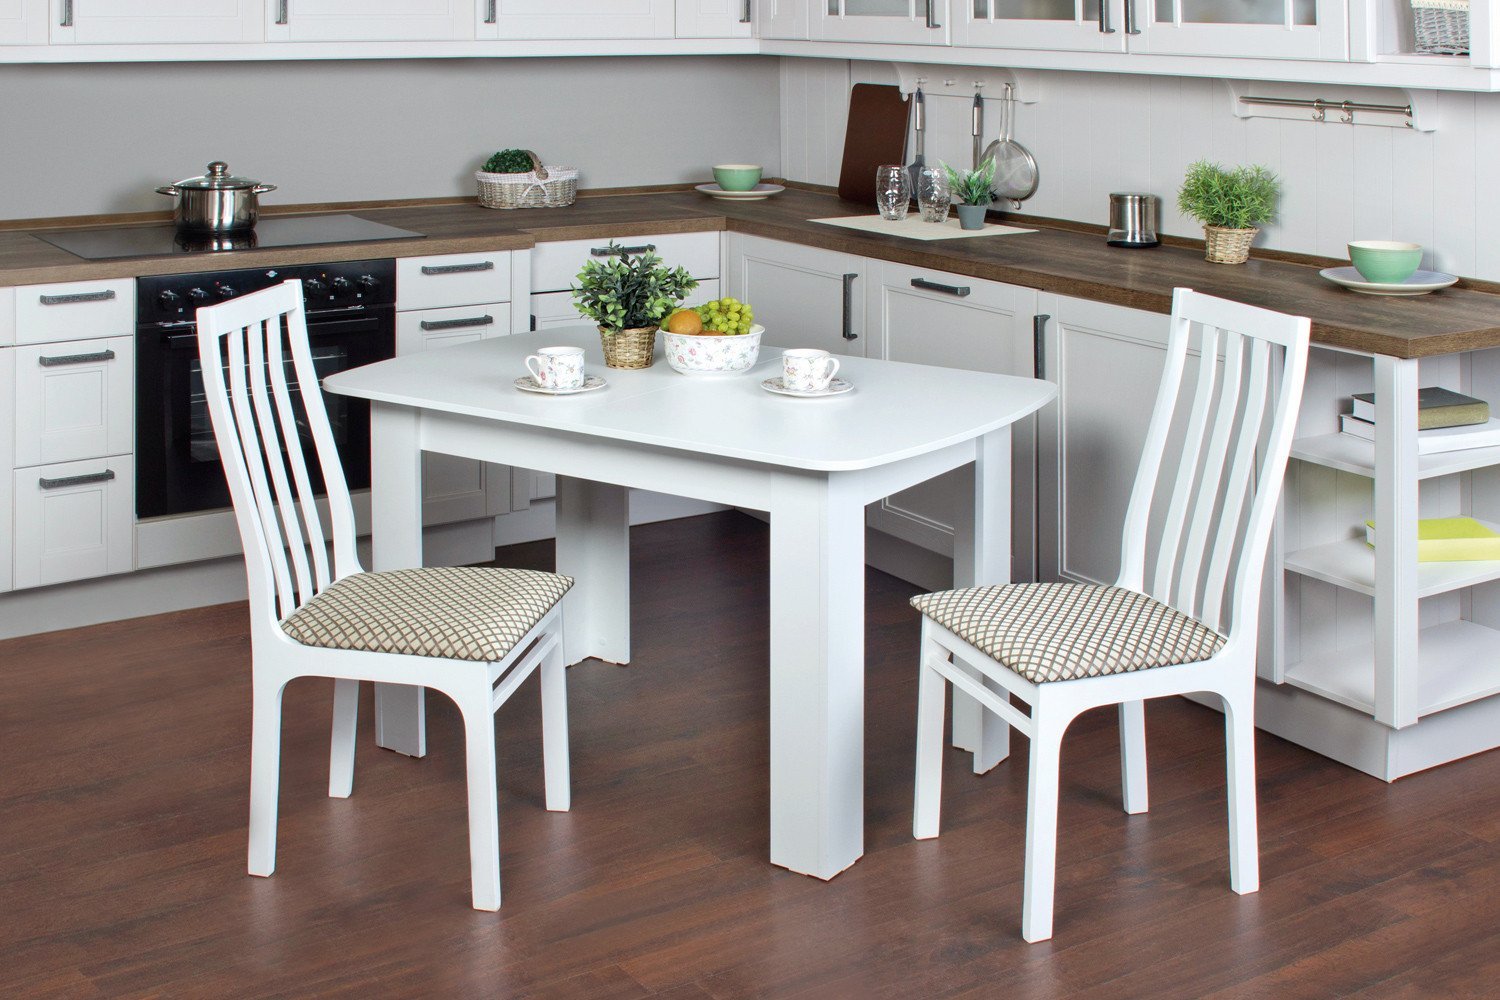 Картинки кухонного стола. Стол хофф белый кухонный. Хофф обеденная группа для кухни. Хофф столы кухонные раздвижные. Хофф столы и стулья для кухни.